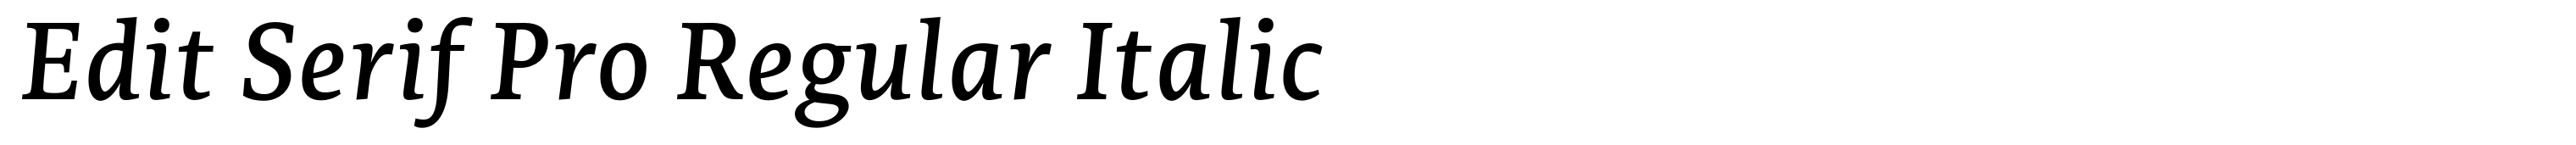 Edit Serif Pro Regular Italic